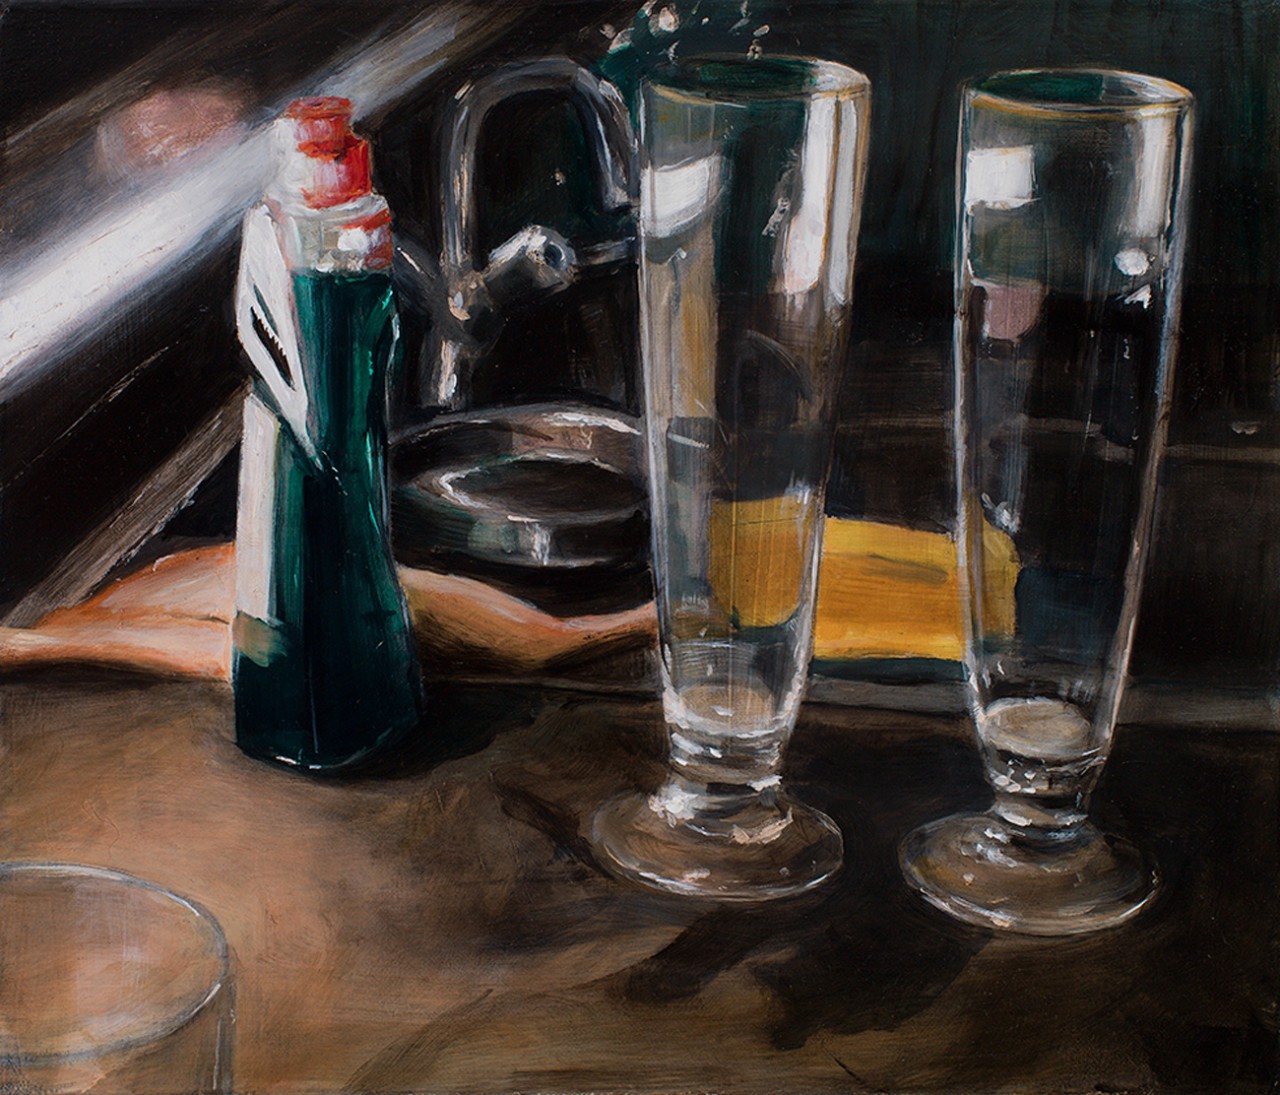 gläser und spüli, 2014, öl/leinwand, 30 x 35 cm